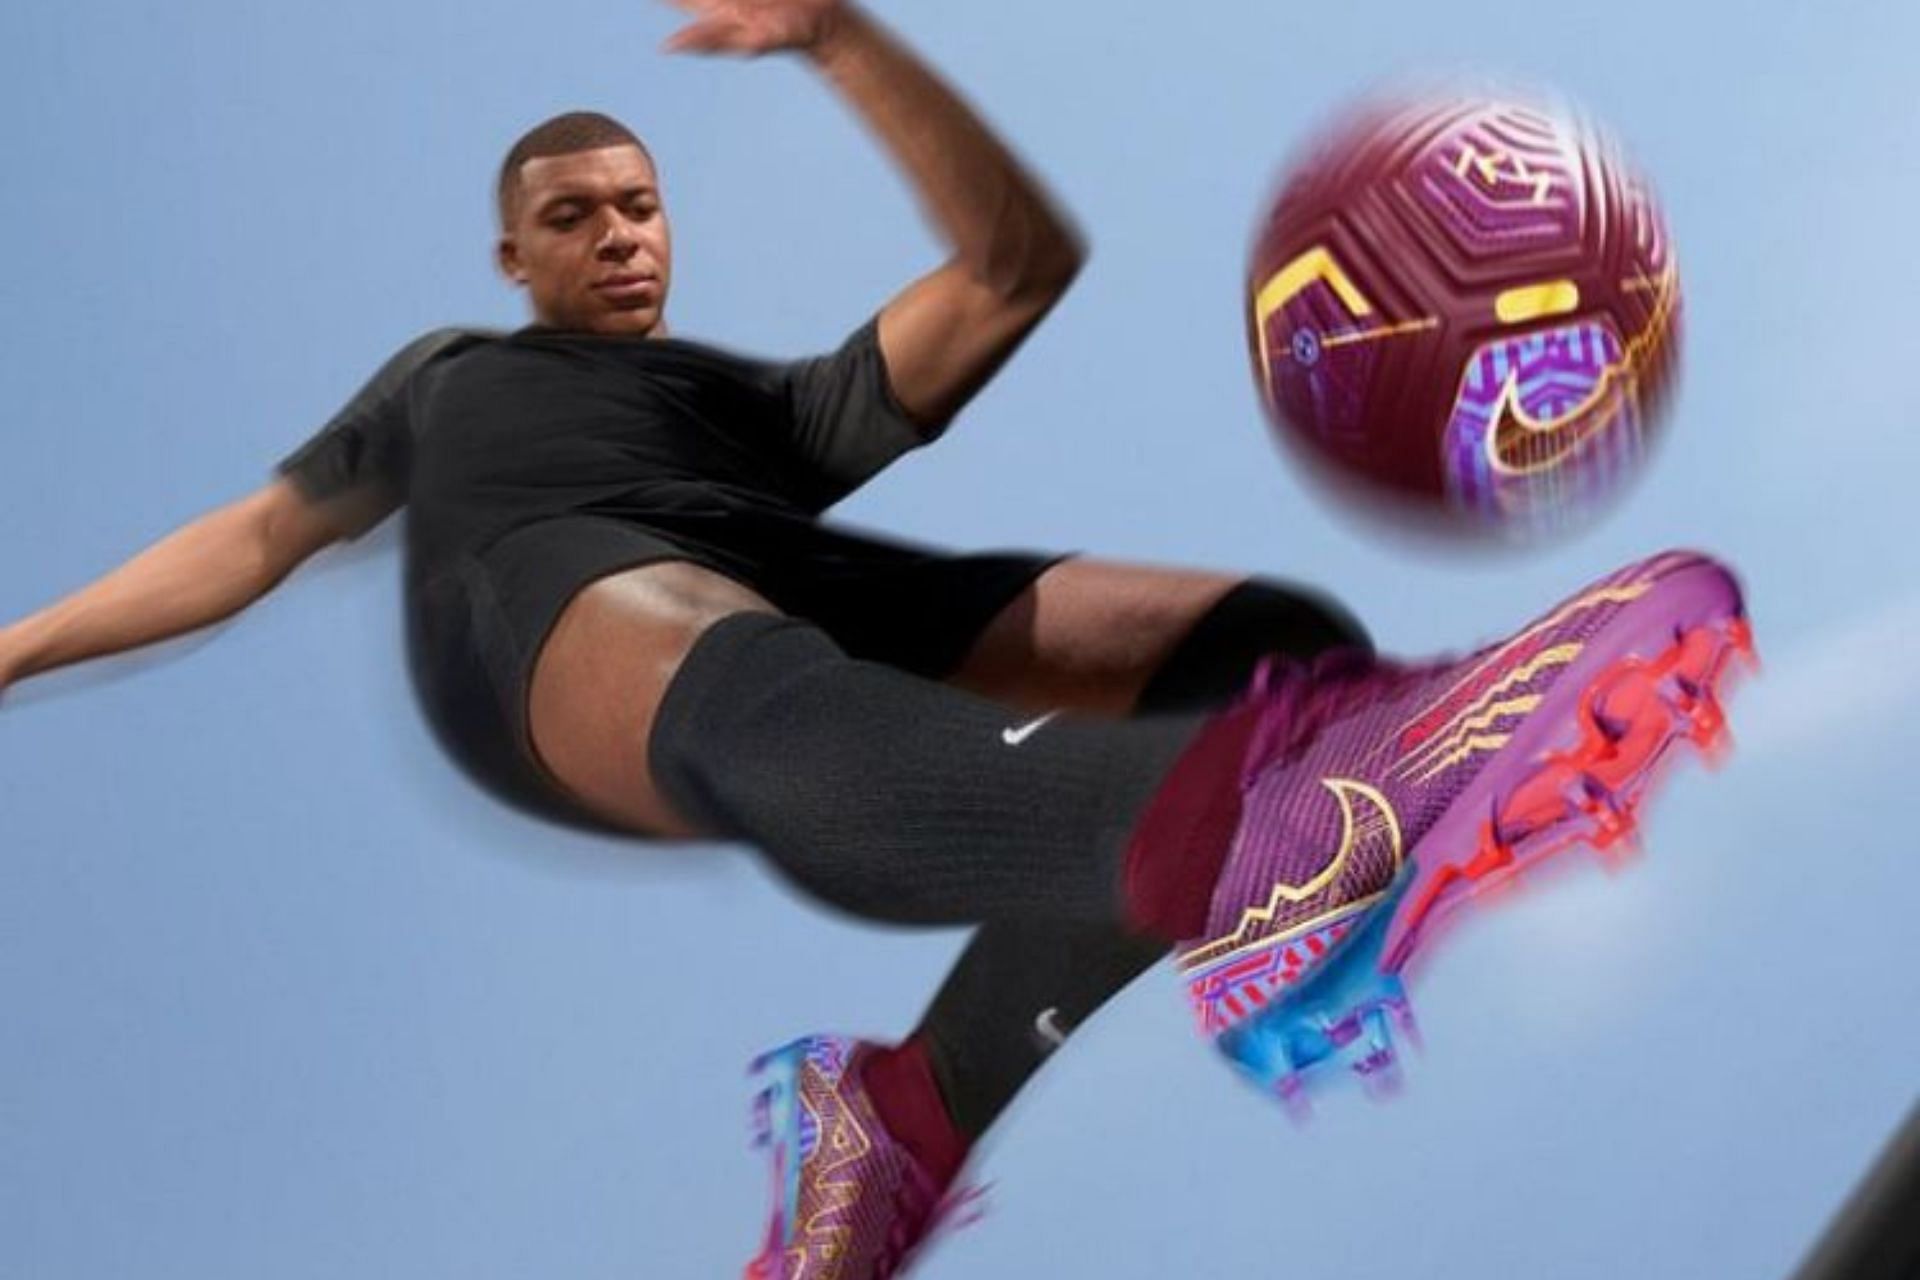 Tientallen overtuigen De kamer schoonmaken Nike: 4 best football boots worn by Kylian Mbappe